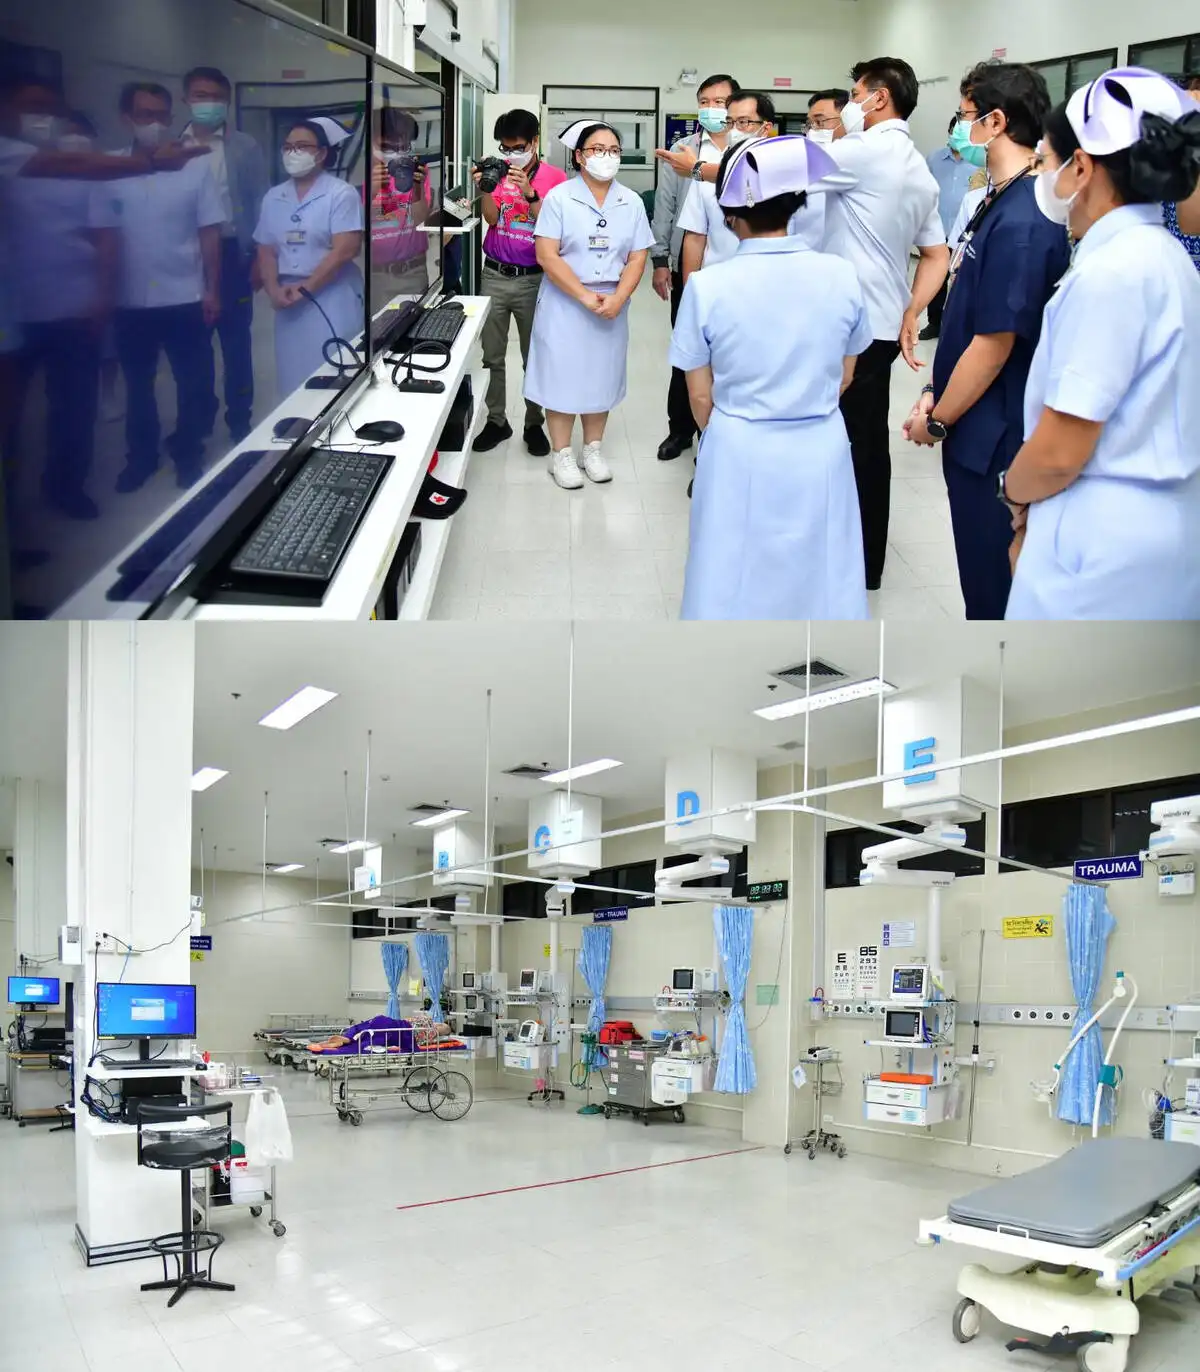 ชื่นชม Telemedicine รพ.พุทธชินราช เชื่อมรถพยาบาล-ห้องฉุกเฉิน ดูแลผู้ป่วยวิกฤติ HealthServ